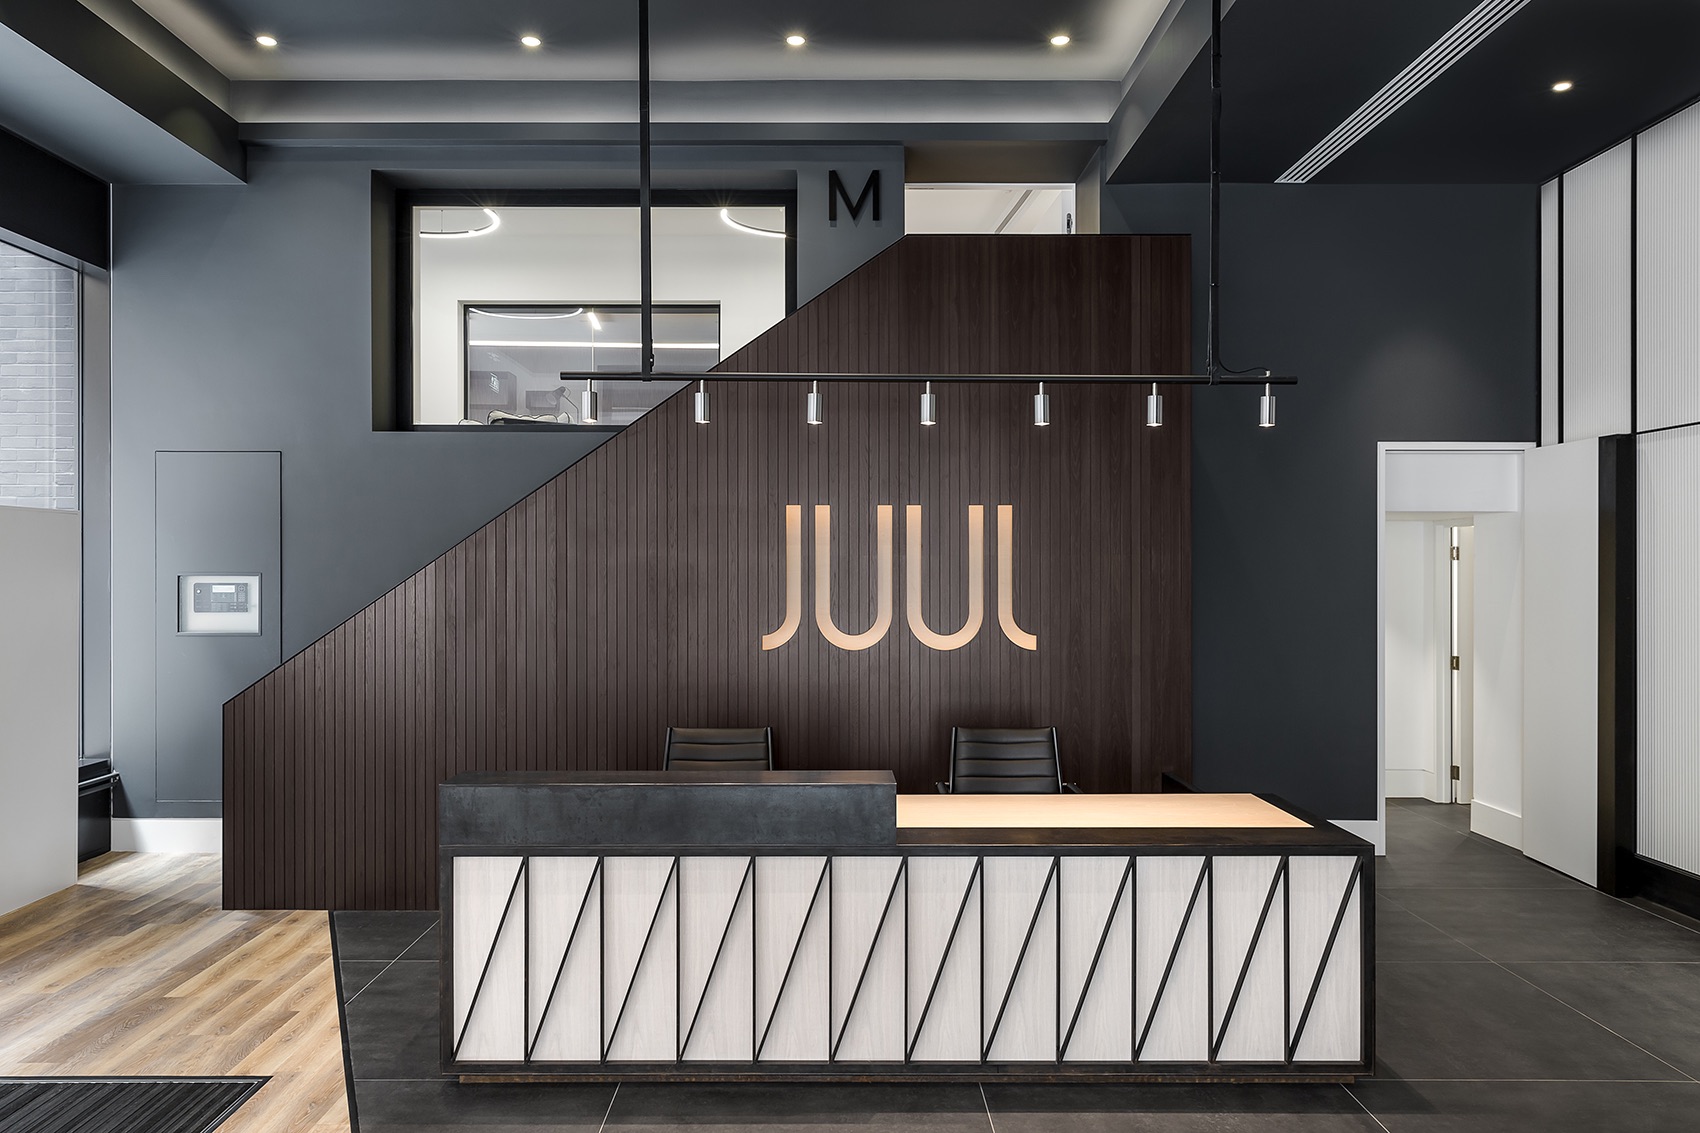 电子烟公司JUUL伦敦新总部设计